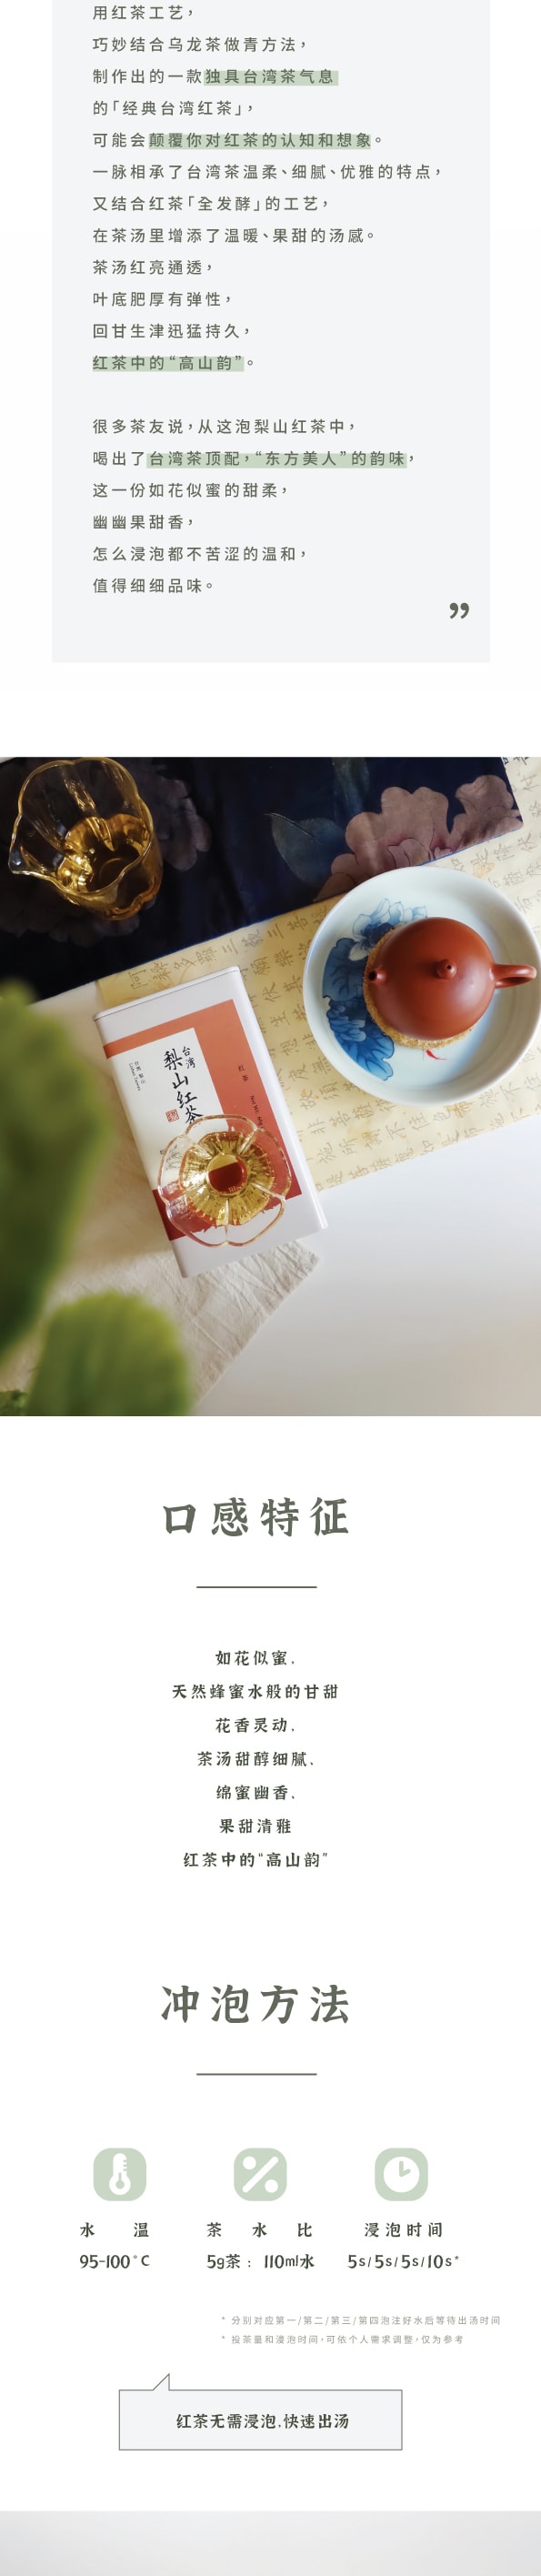 ZhaoTea 梨山红茶 台湾高等级高山红茶 花果蜜香 甘甜细腻 试饮三连泡 茶叶 红茶 12g